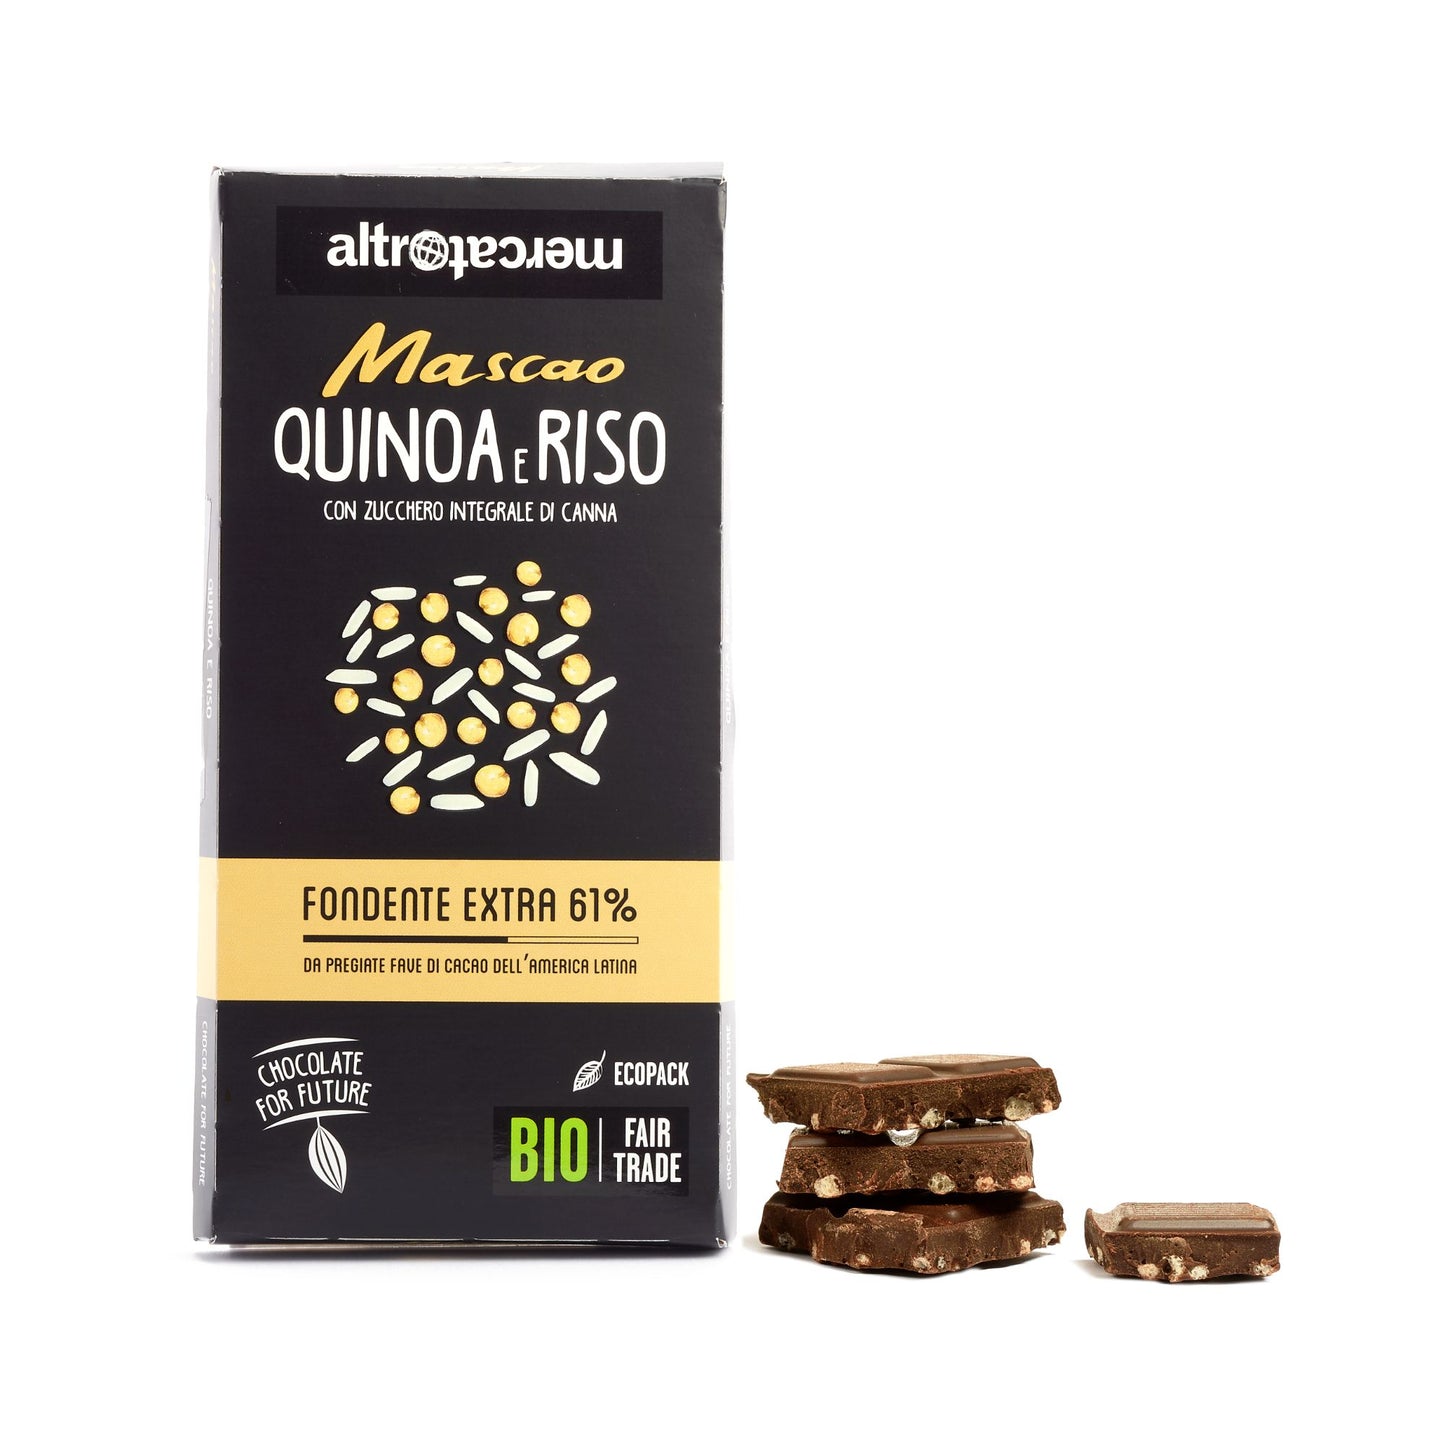 Cioccolato Mascao fondente extra con quinoa e riso - bio | 100 g